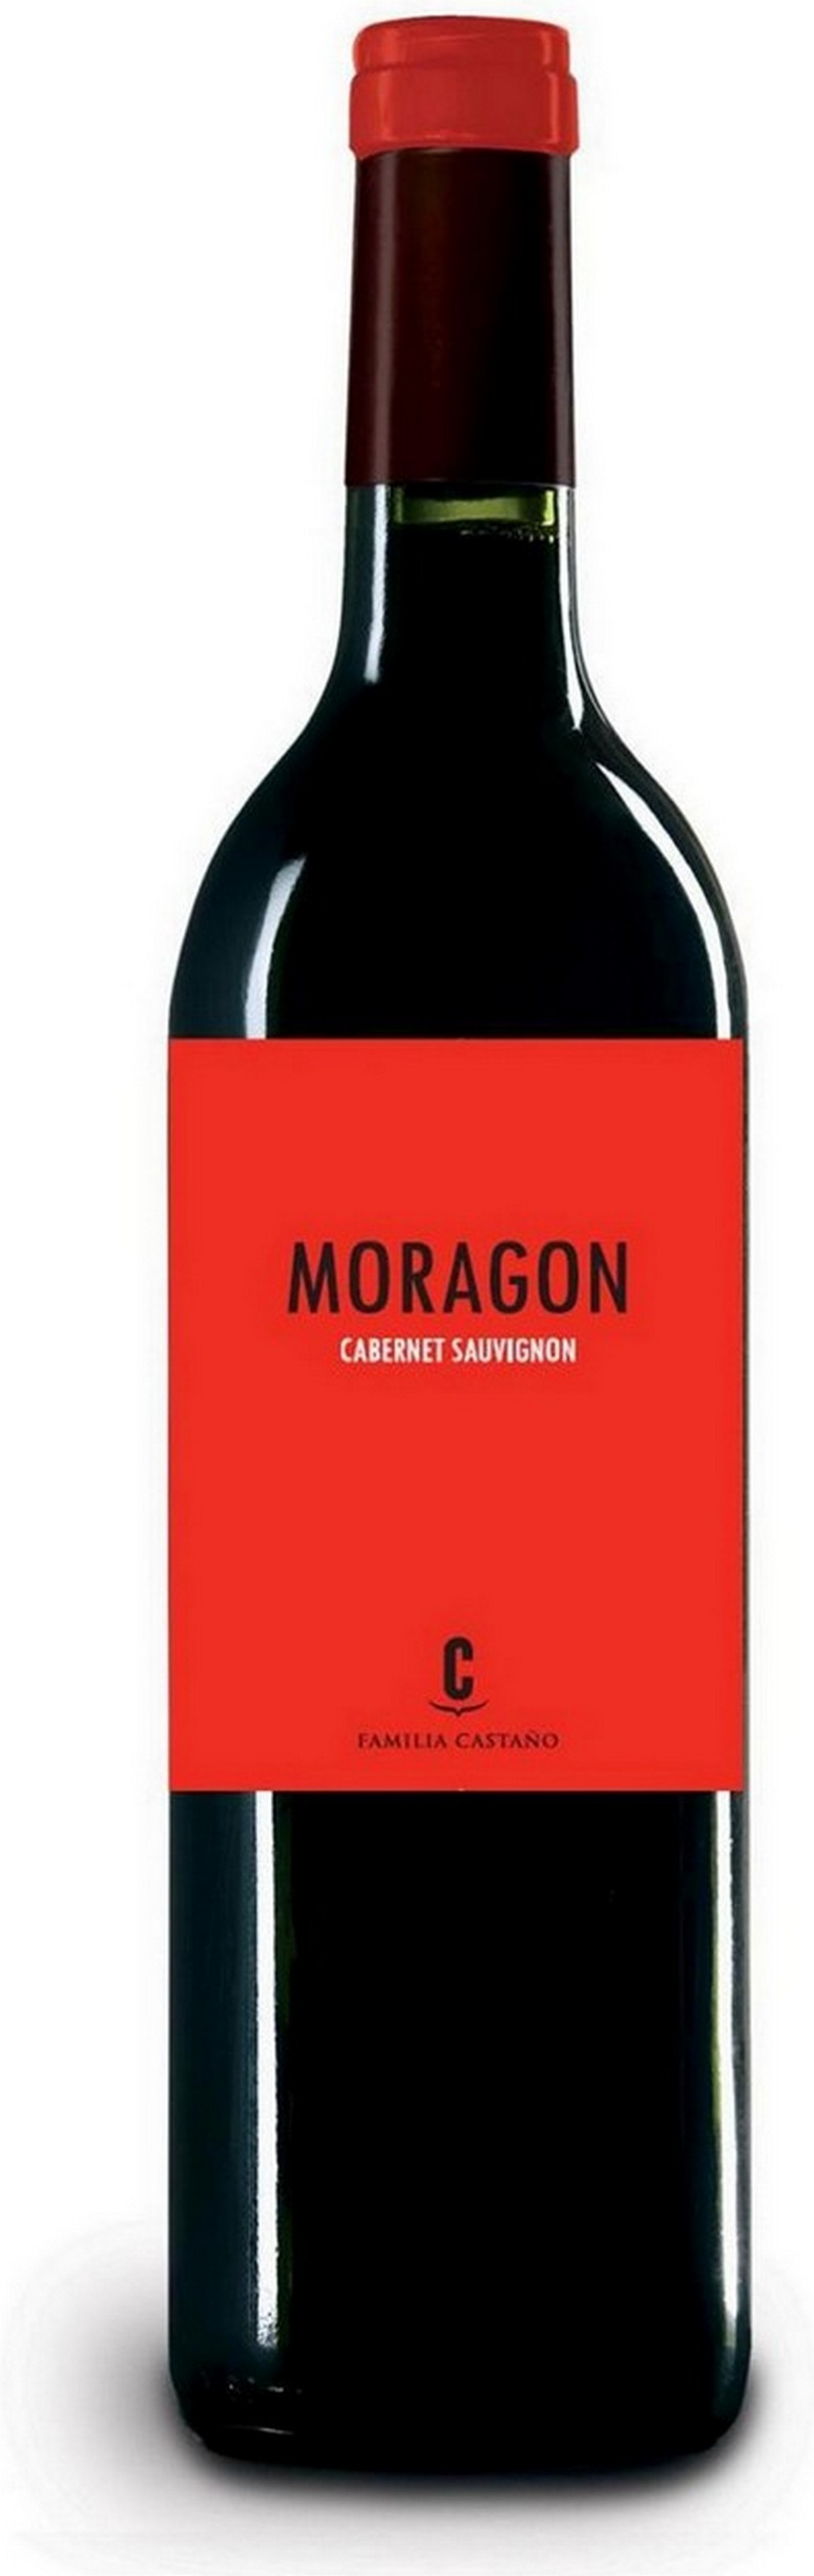 moragon-cabernet-sauvignon-2019